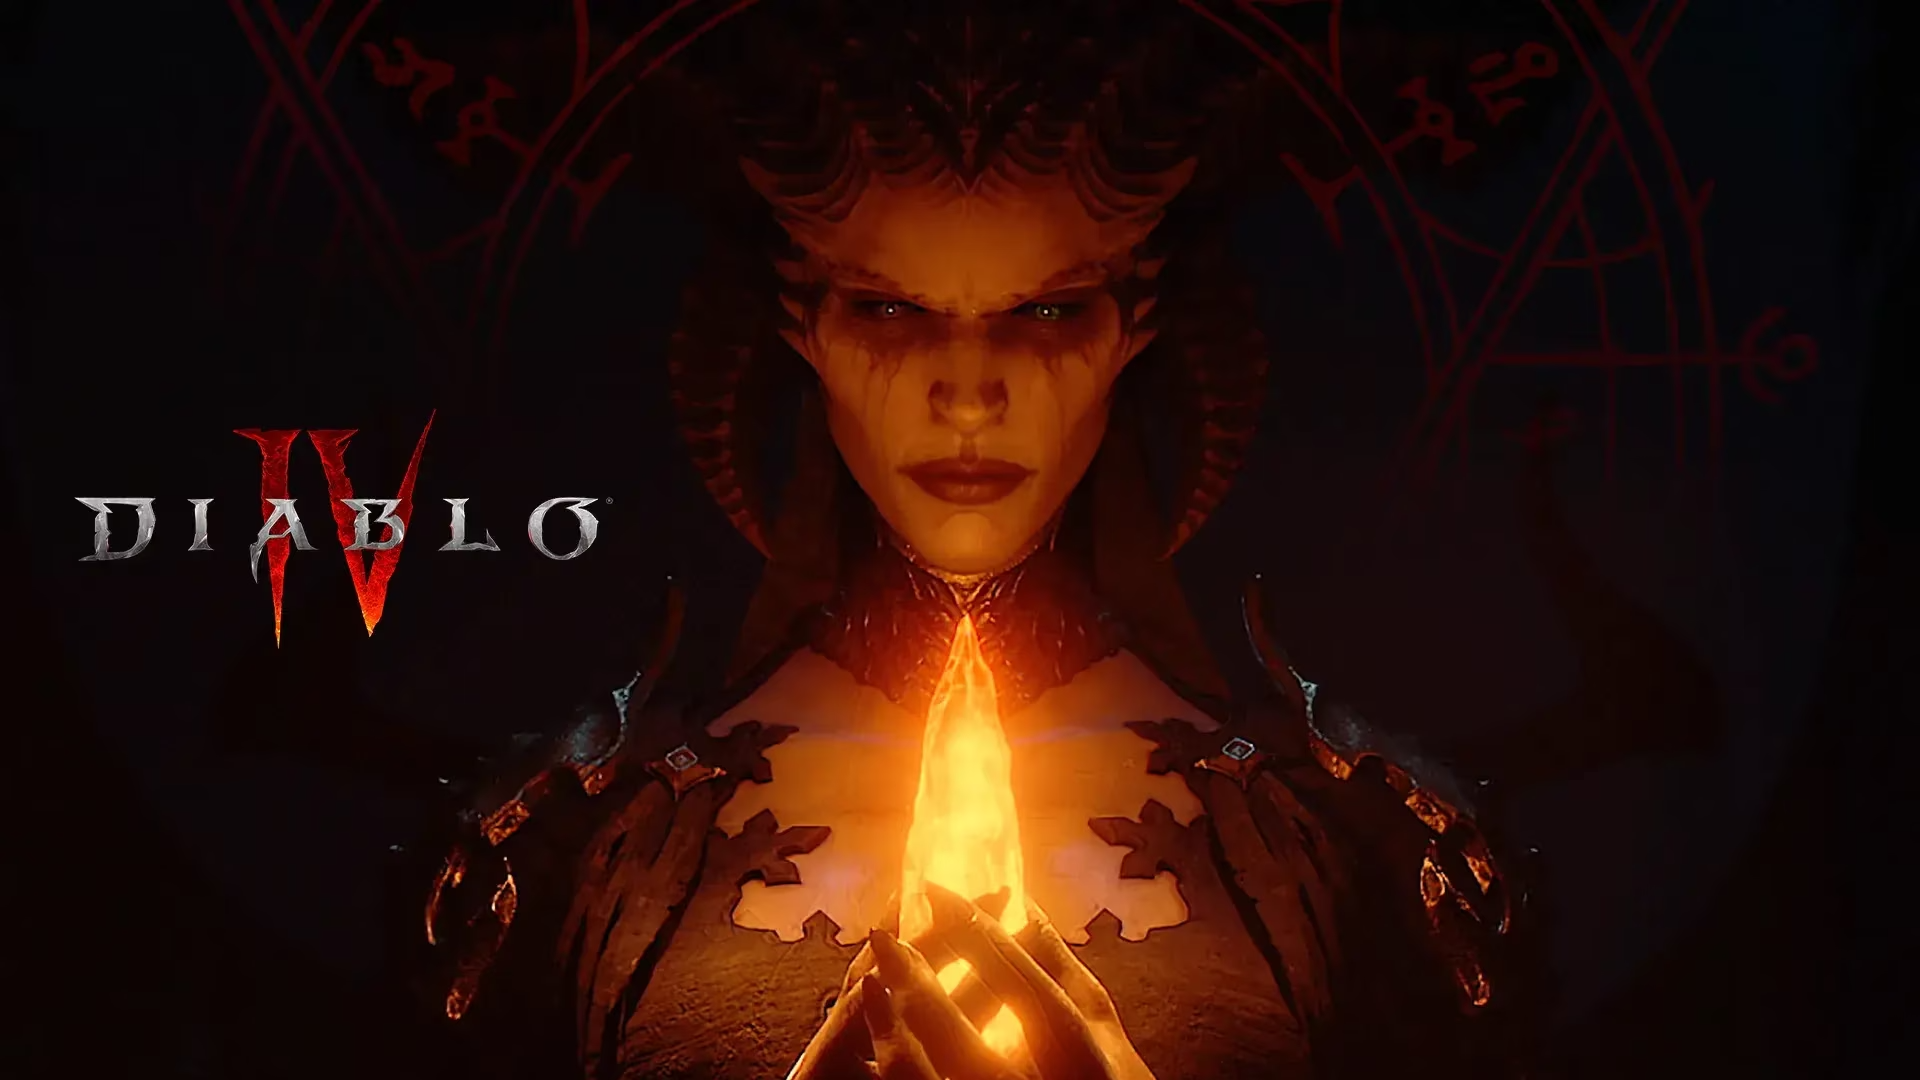 Ingen annonceringer eller detaljer (endnu): Diablo IV sæson 3 starter den 23. januar